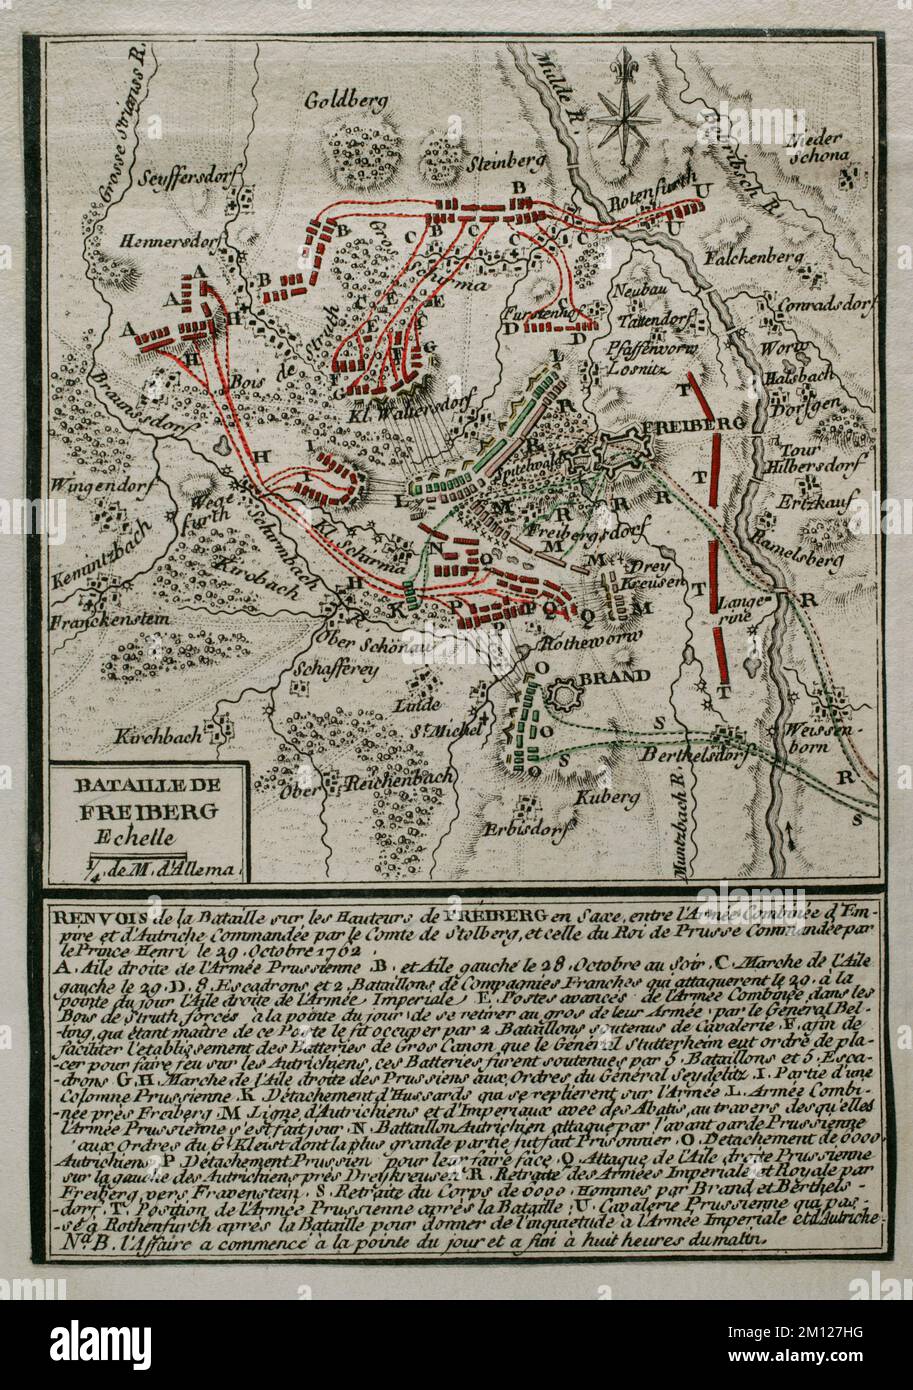 Guerra dei sette anni (1756-1763). Terza guerra silesiana. Mappa della Battaglia di Freiberg (29 ottobre 1762). L'esercito prussiano, guidato dal principe Enrico di Prussia, sconfisse un esercito austriaco sotto Federico Carlo di Stolberg-Gedern e Andras Hadik. Pubblicato nel 1765 dal cartografo Jean de Beaurain (1696-1771) come illustrazione della sua Grande carta della Germania, con gli eventi che si sono verificati durante la Guerra dei sette anni. Incisione e incisione. Edizione francese, 1765. Biblioteca storica militare di Barcellona (Biblioteca Histórico Militar de Barcelona). Catalogna. Spagna. Foto Stock